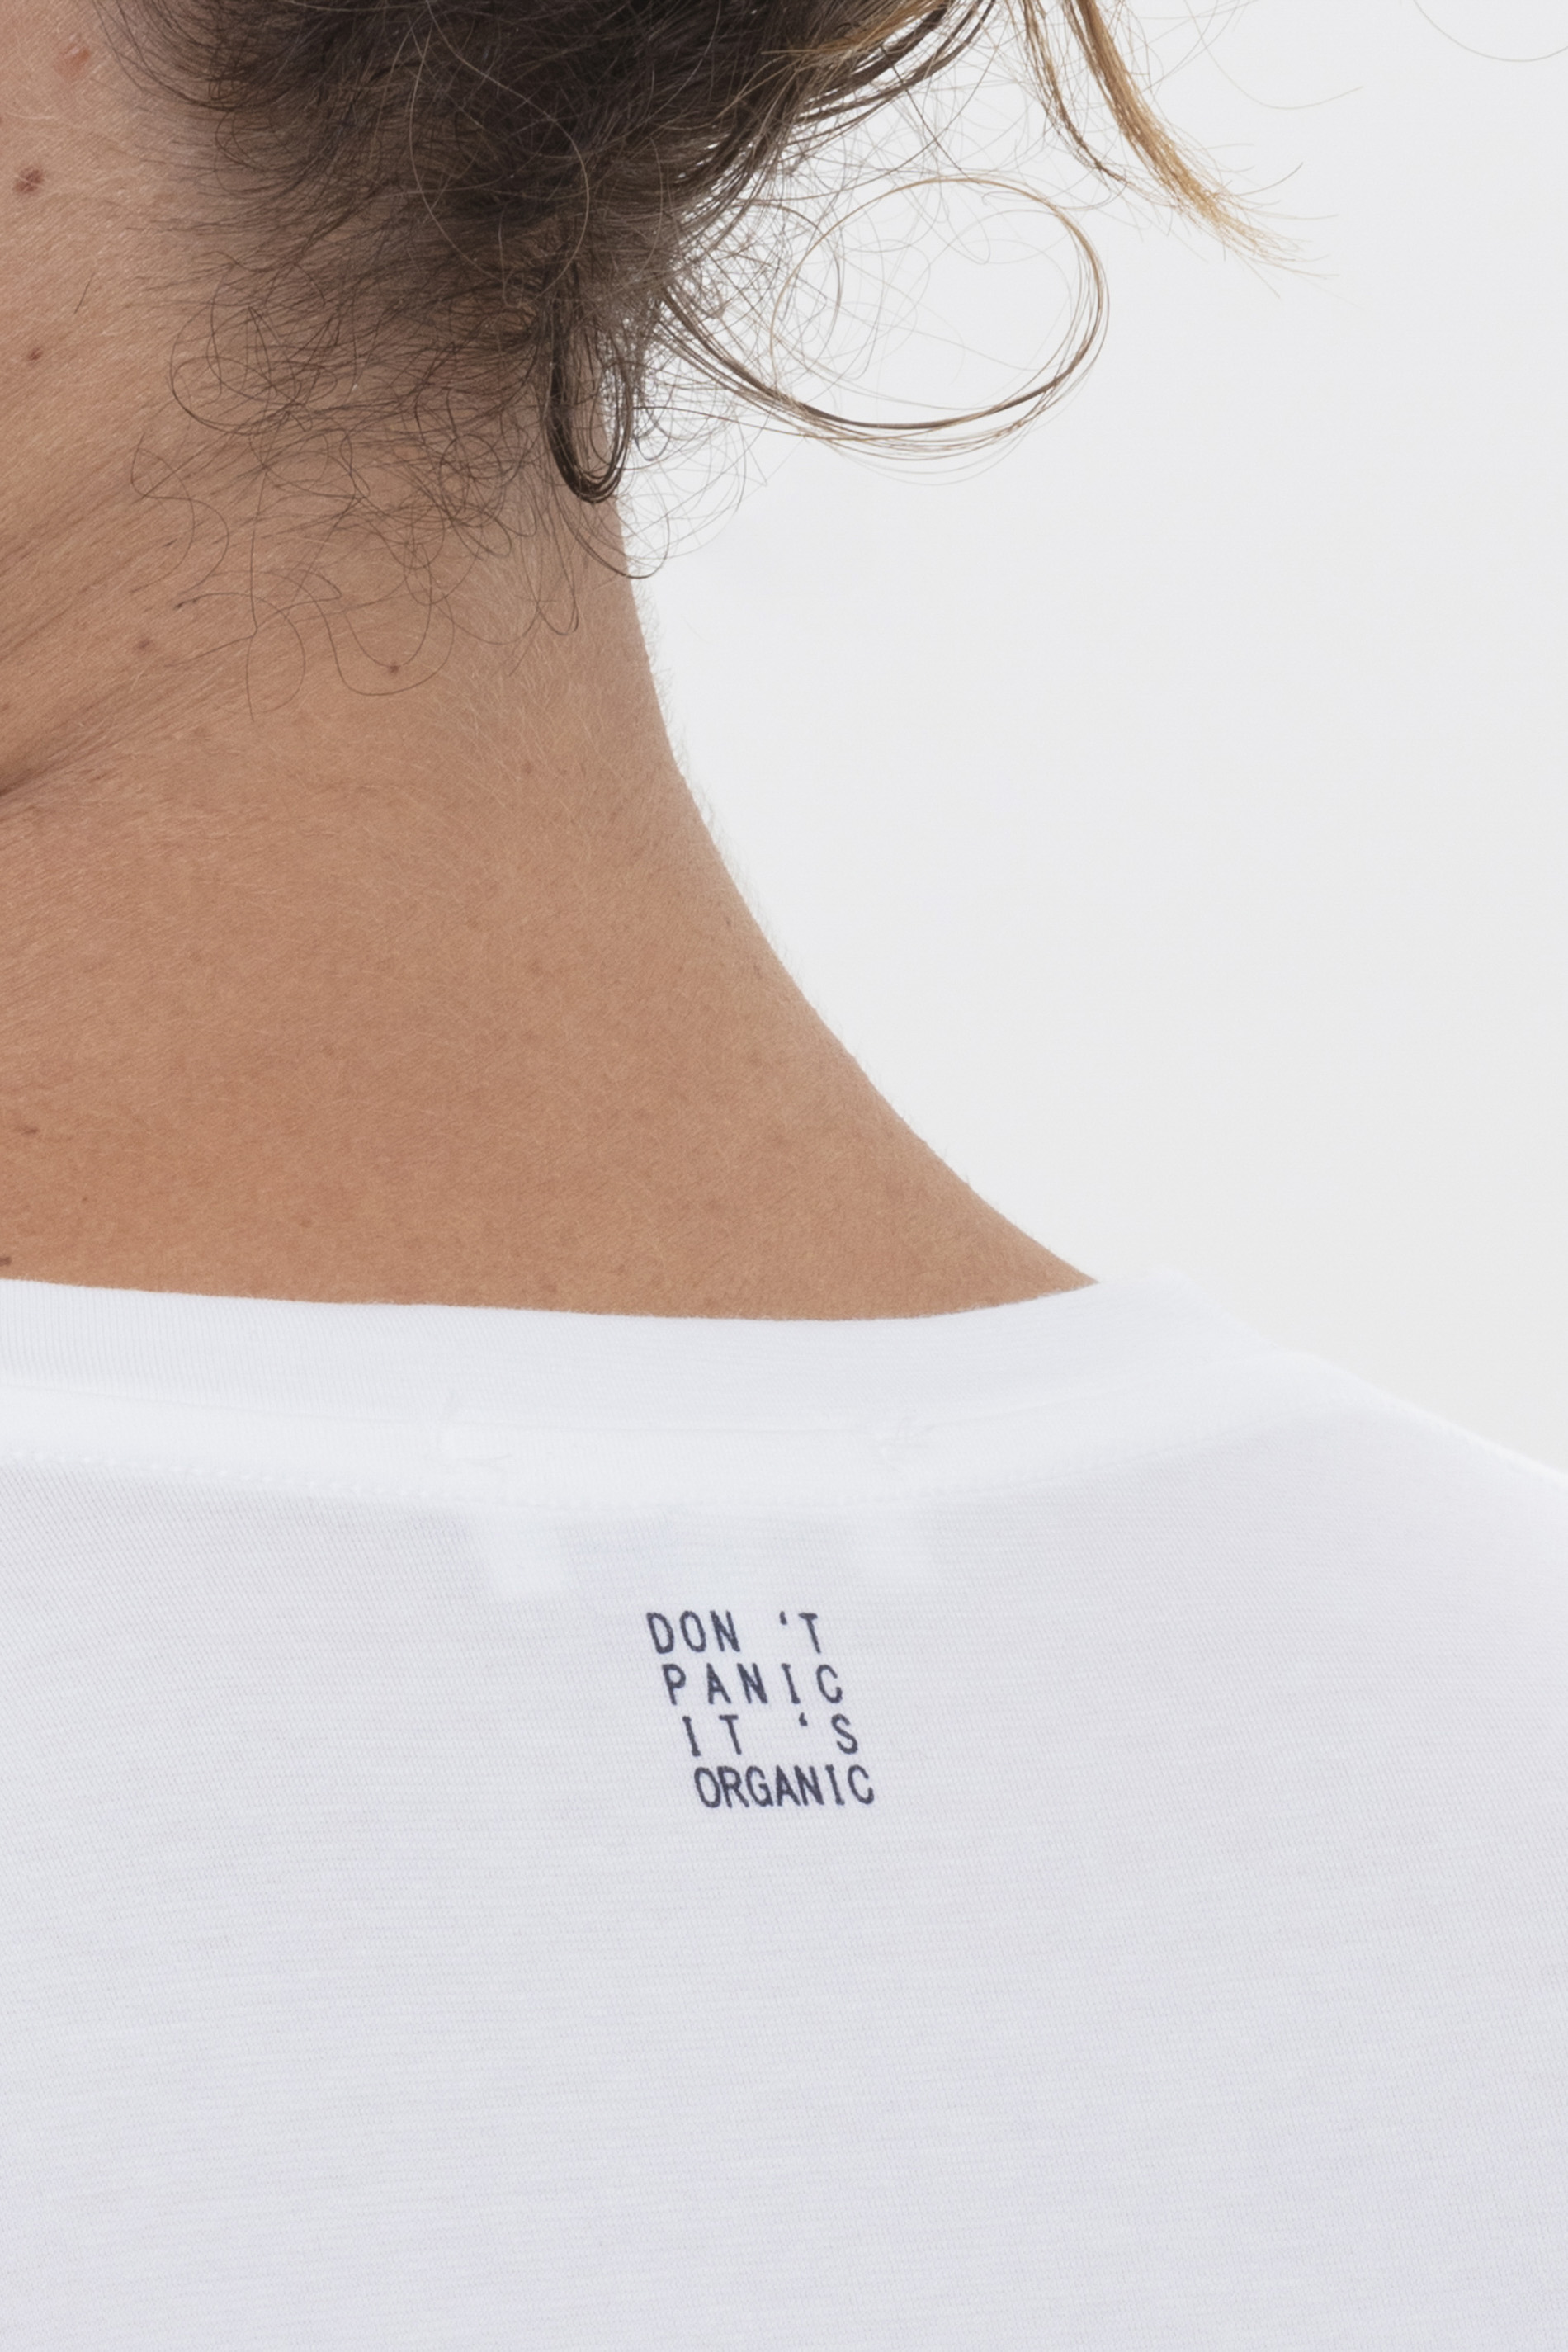 T-Shirt Weiss Serie RE:THINK COLOUR Detailansicht 01 | mey®